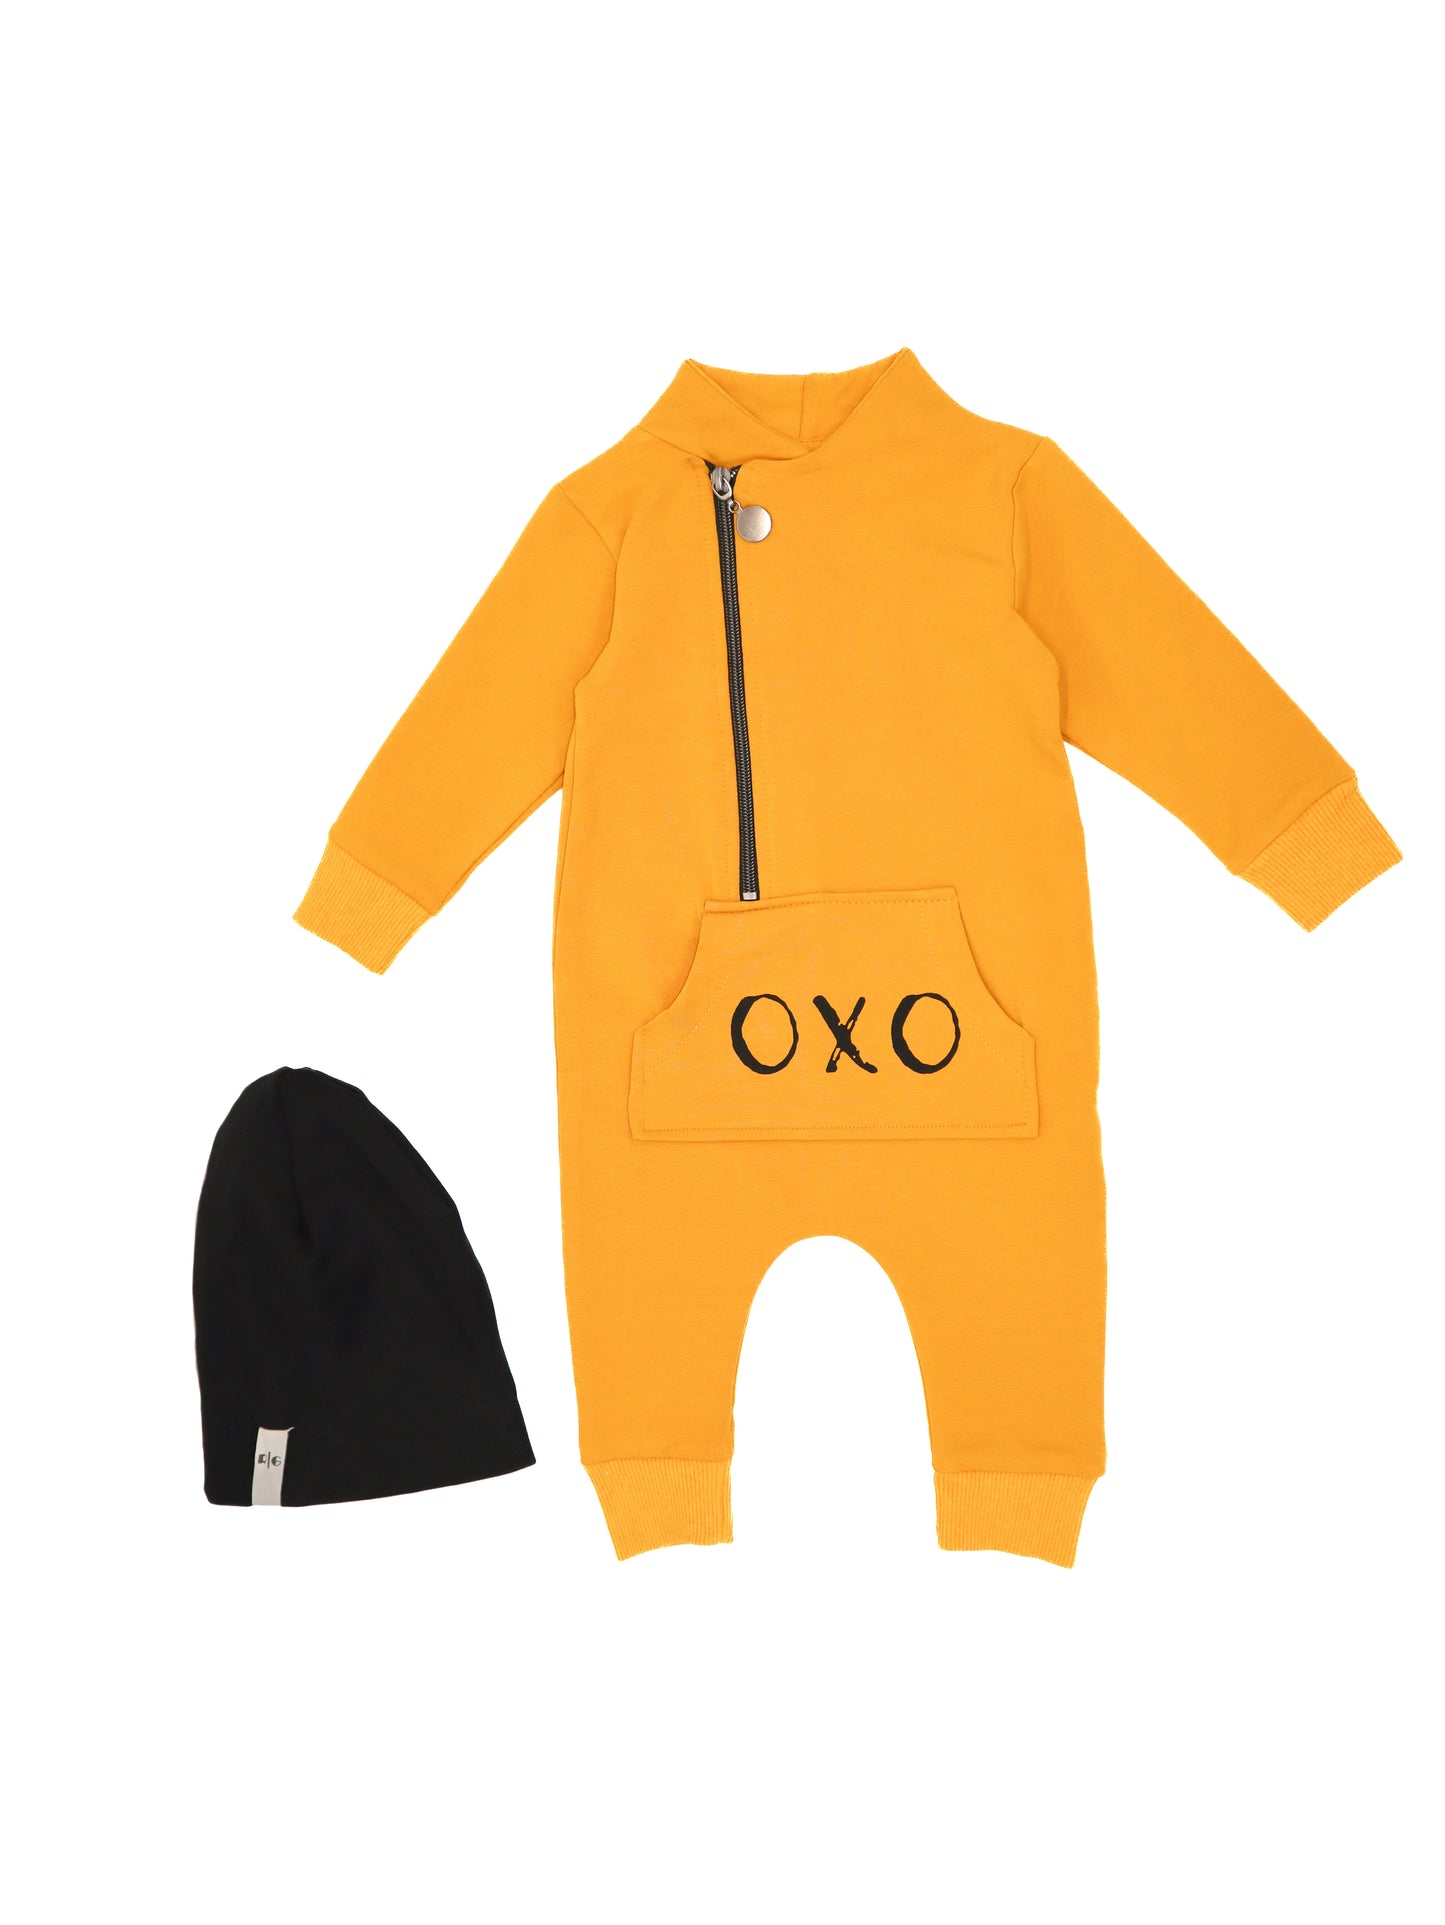 Детский комбинезон с принтом «OXO»